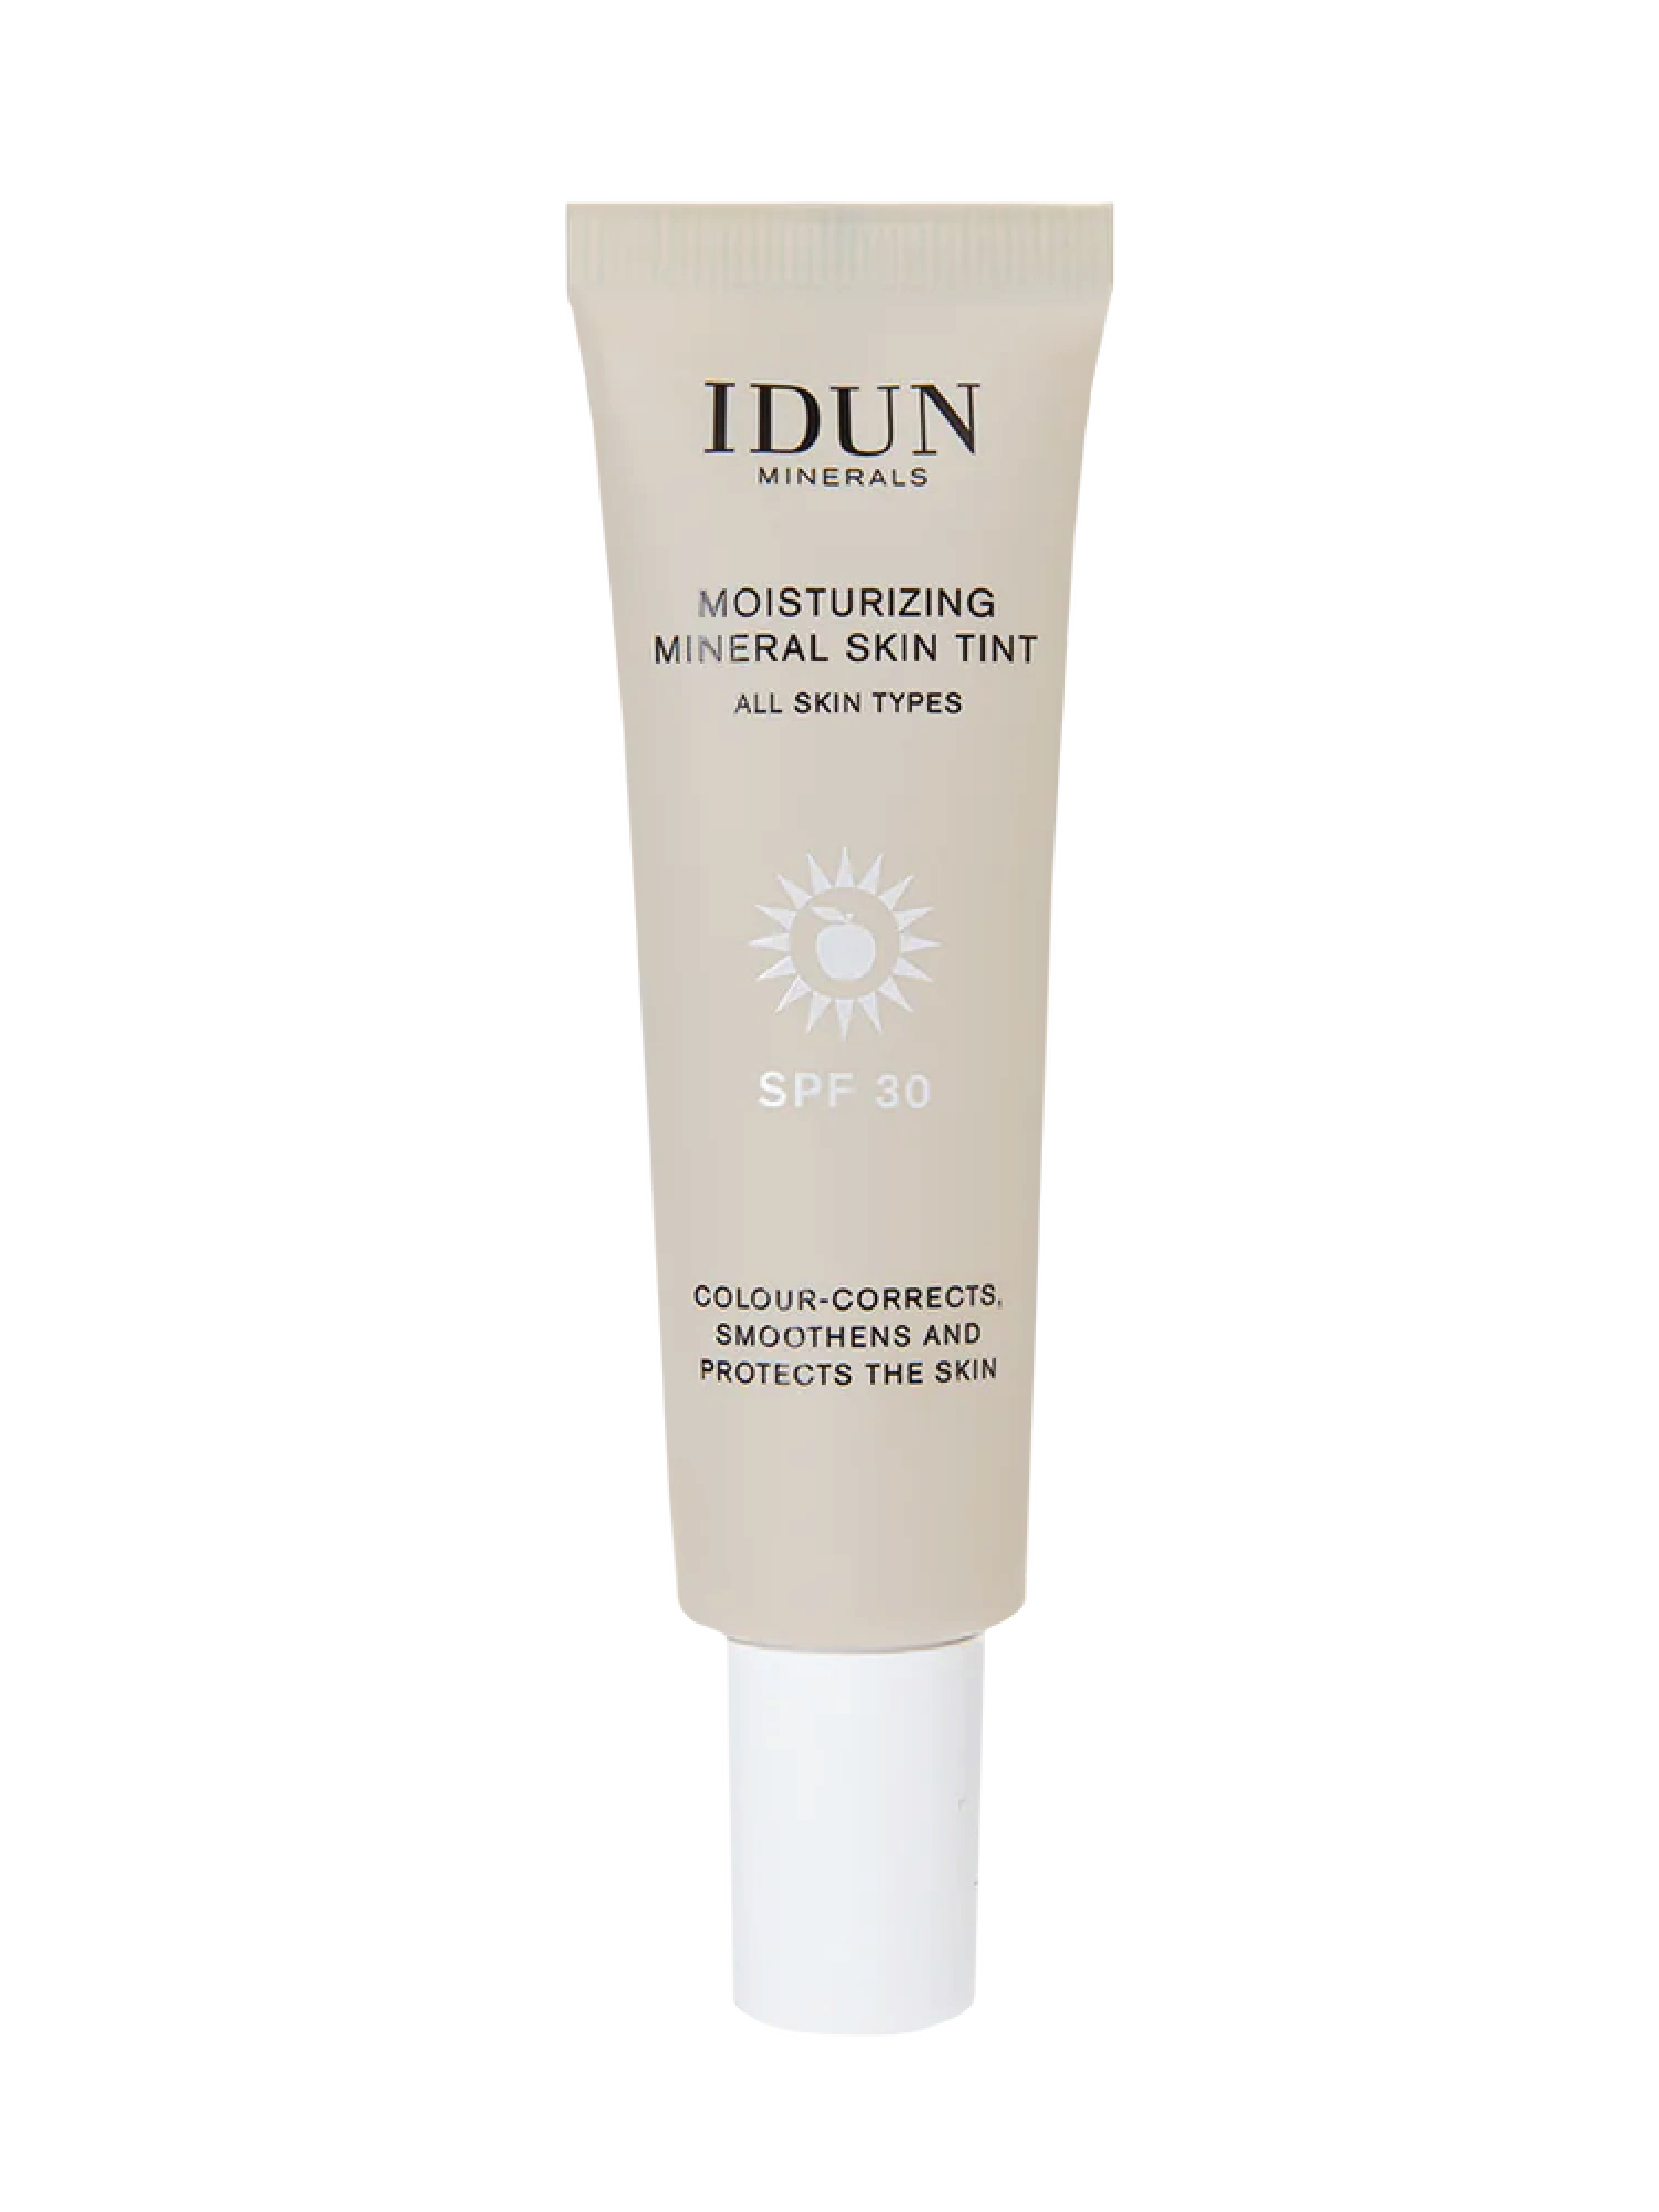 IDUN Minerals Moisturizing Mineral Skin Tint SPF 30, Light/Medium, 27 ml